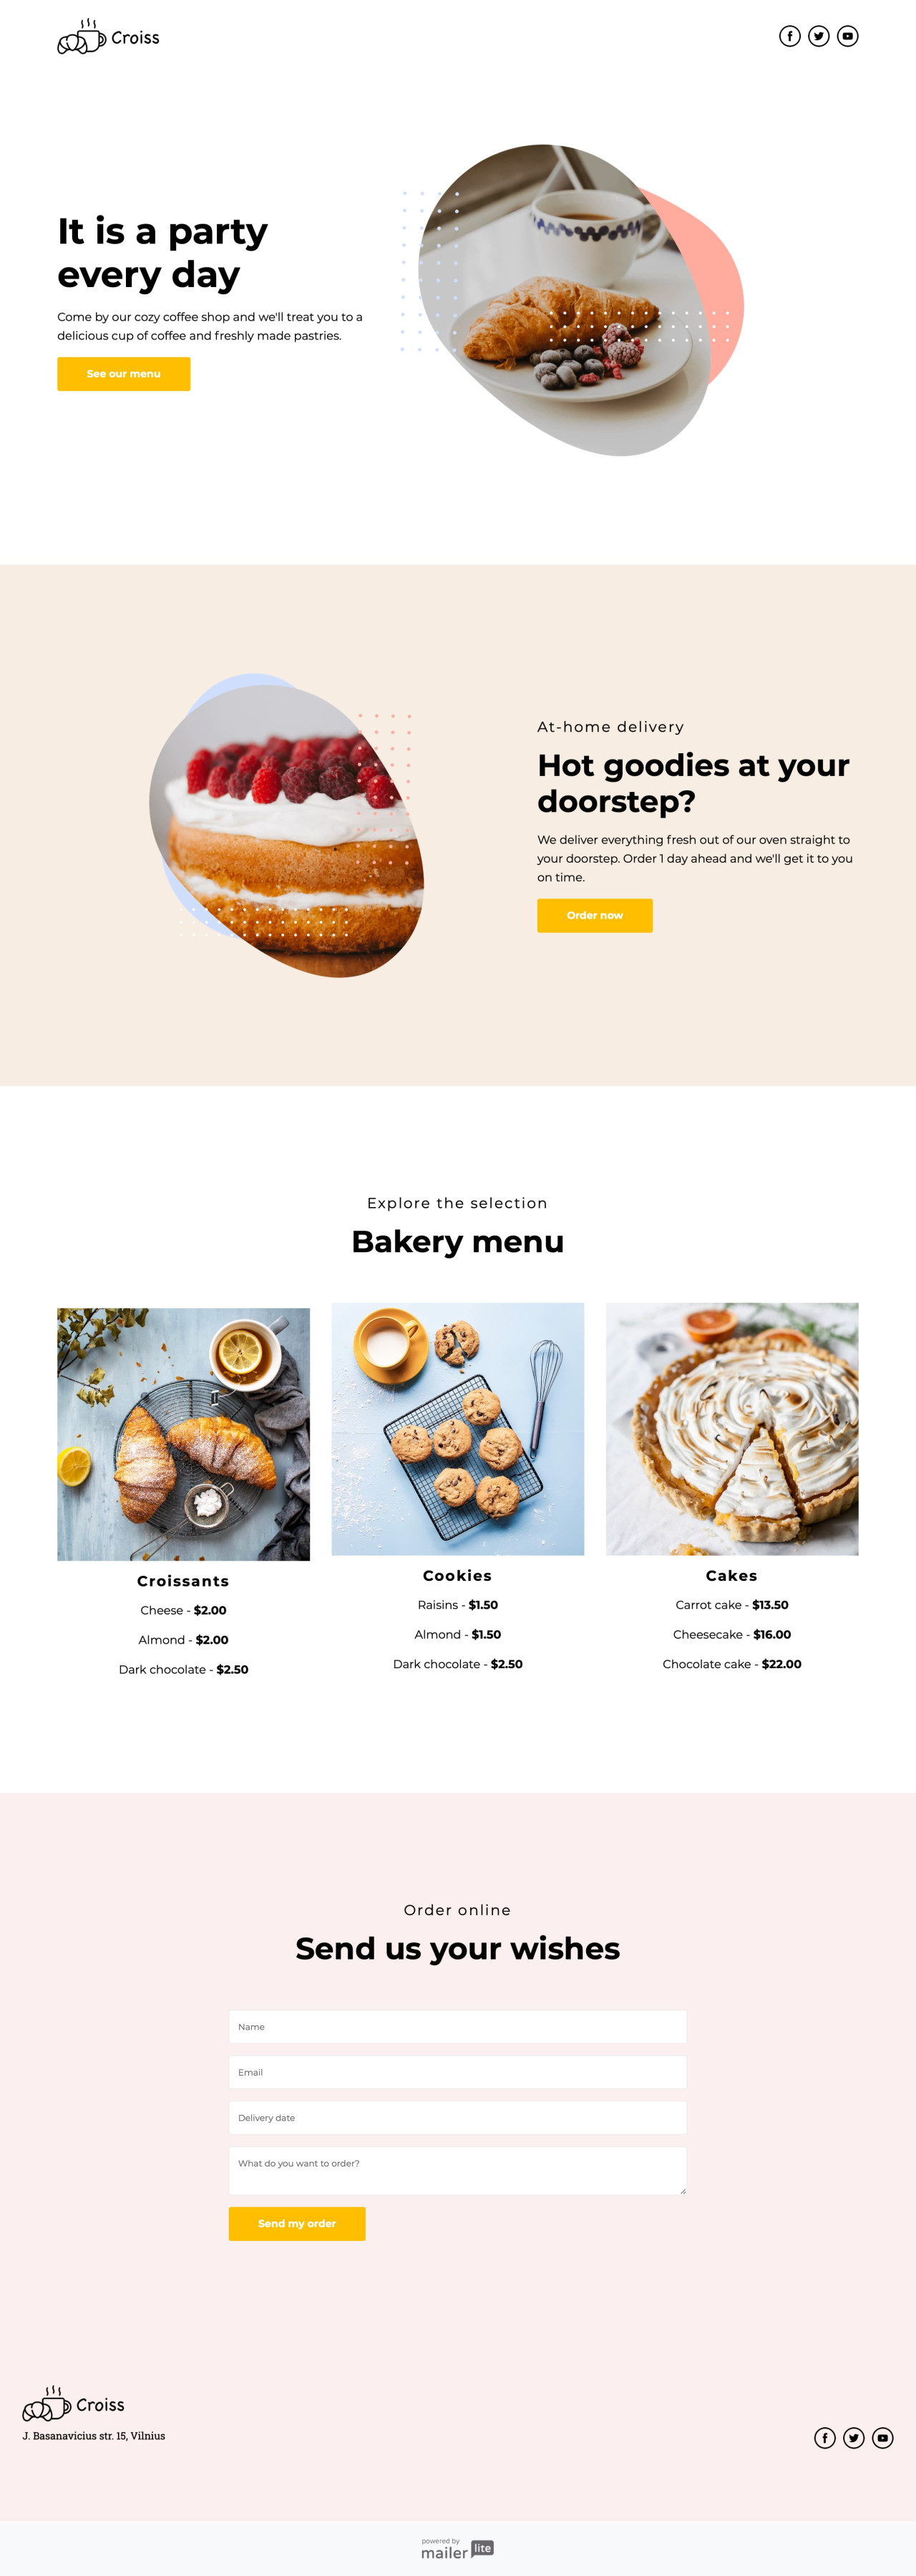 Bakery szablon - stworzony przez MailerLite